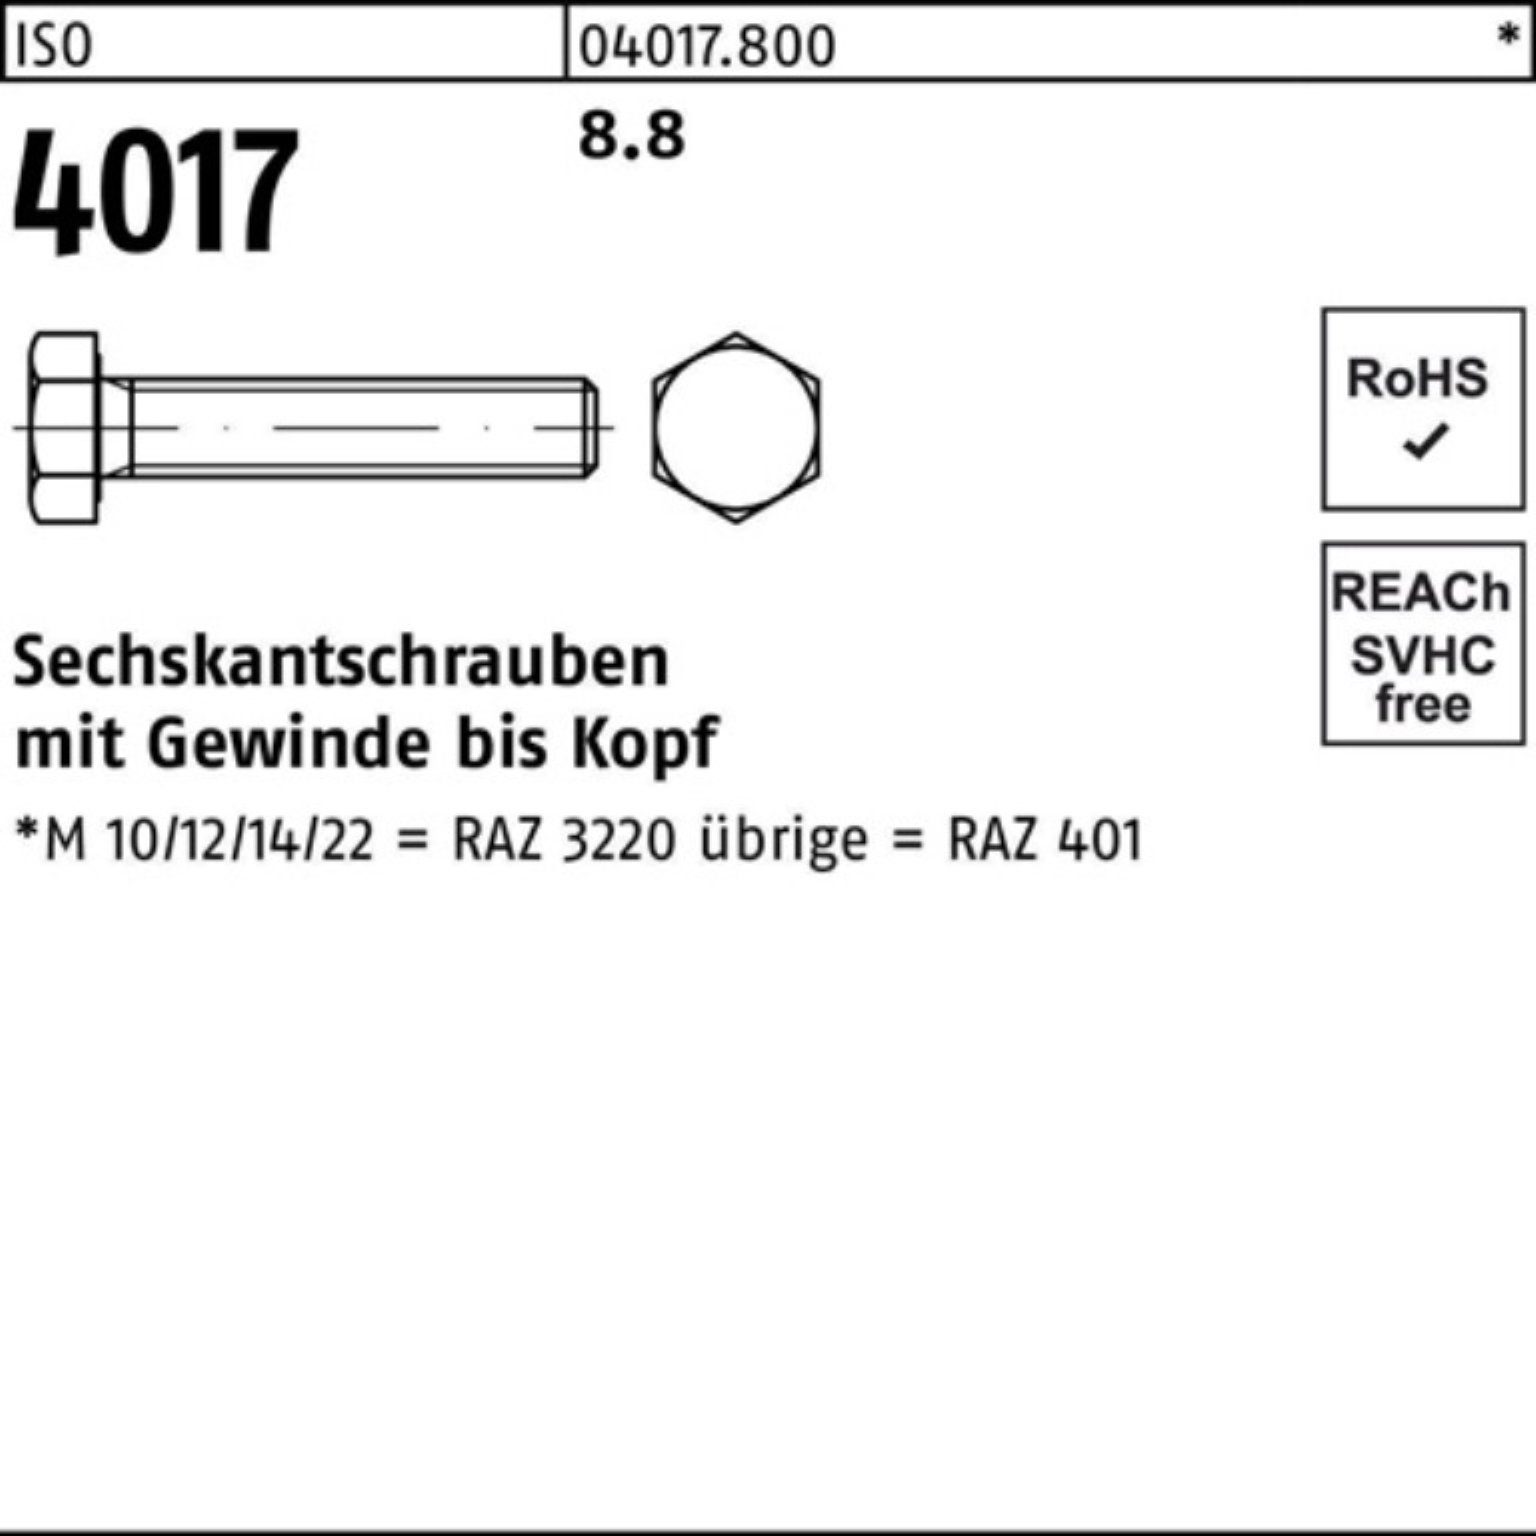 Bufab Sechskantschraube 8.8 100er ISO 25 M24x ISO 401 Pack 25 Sechskantschraube VG 4017 Stück